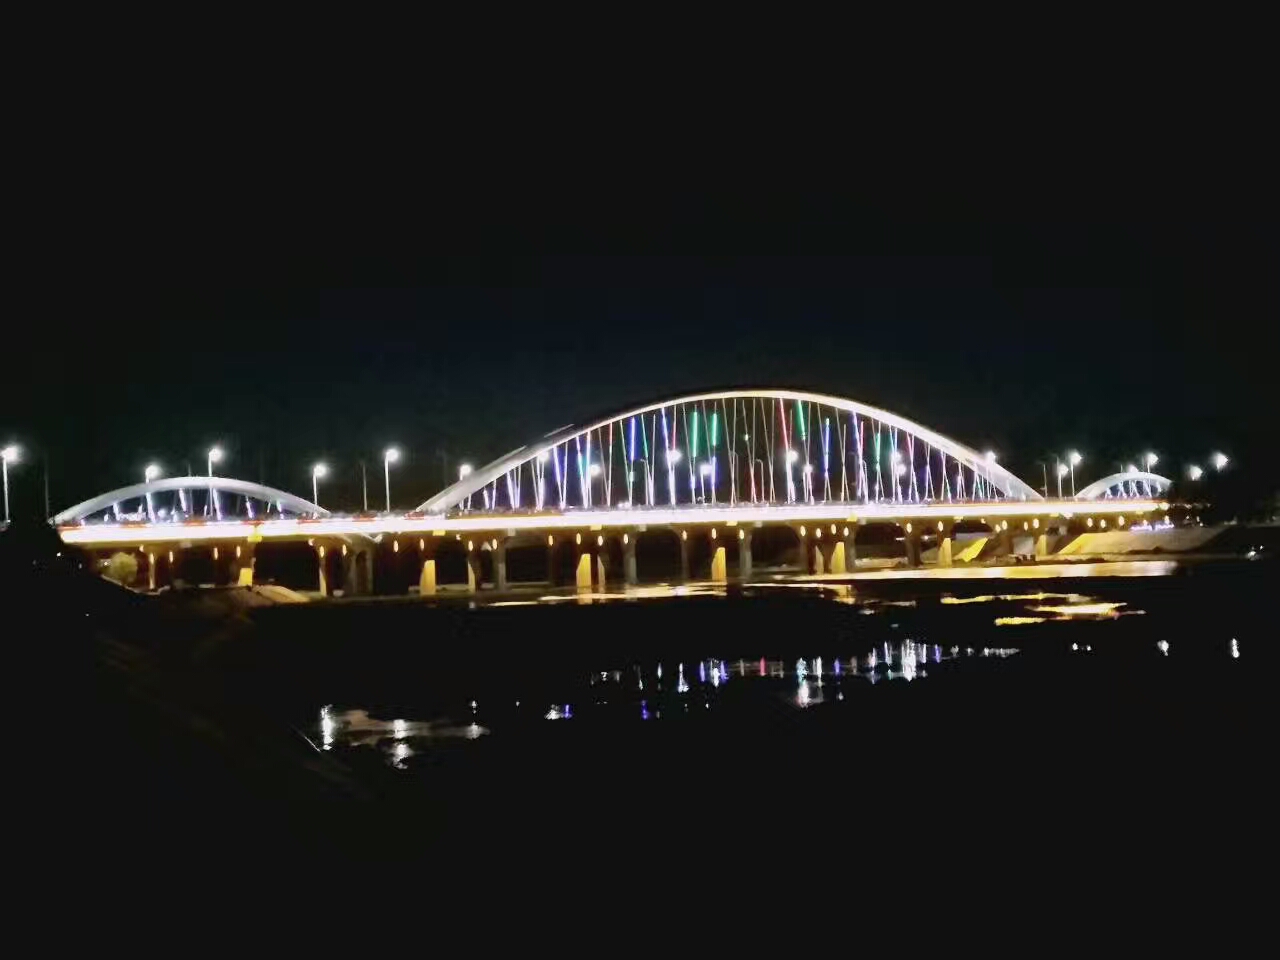 邓州彩虹桥图片